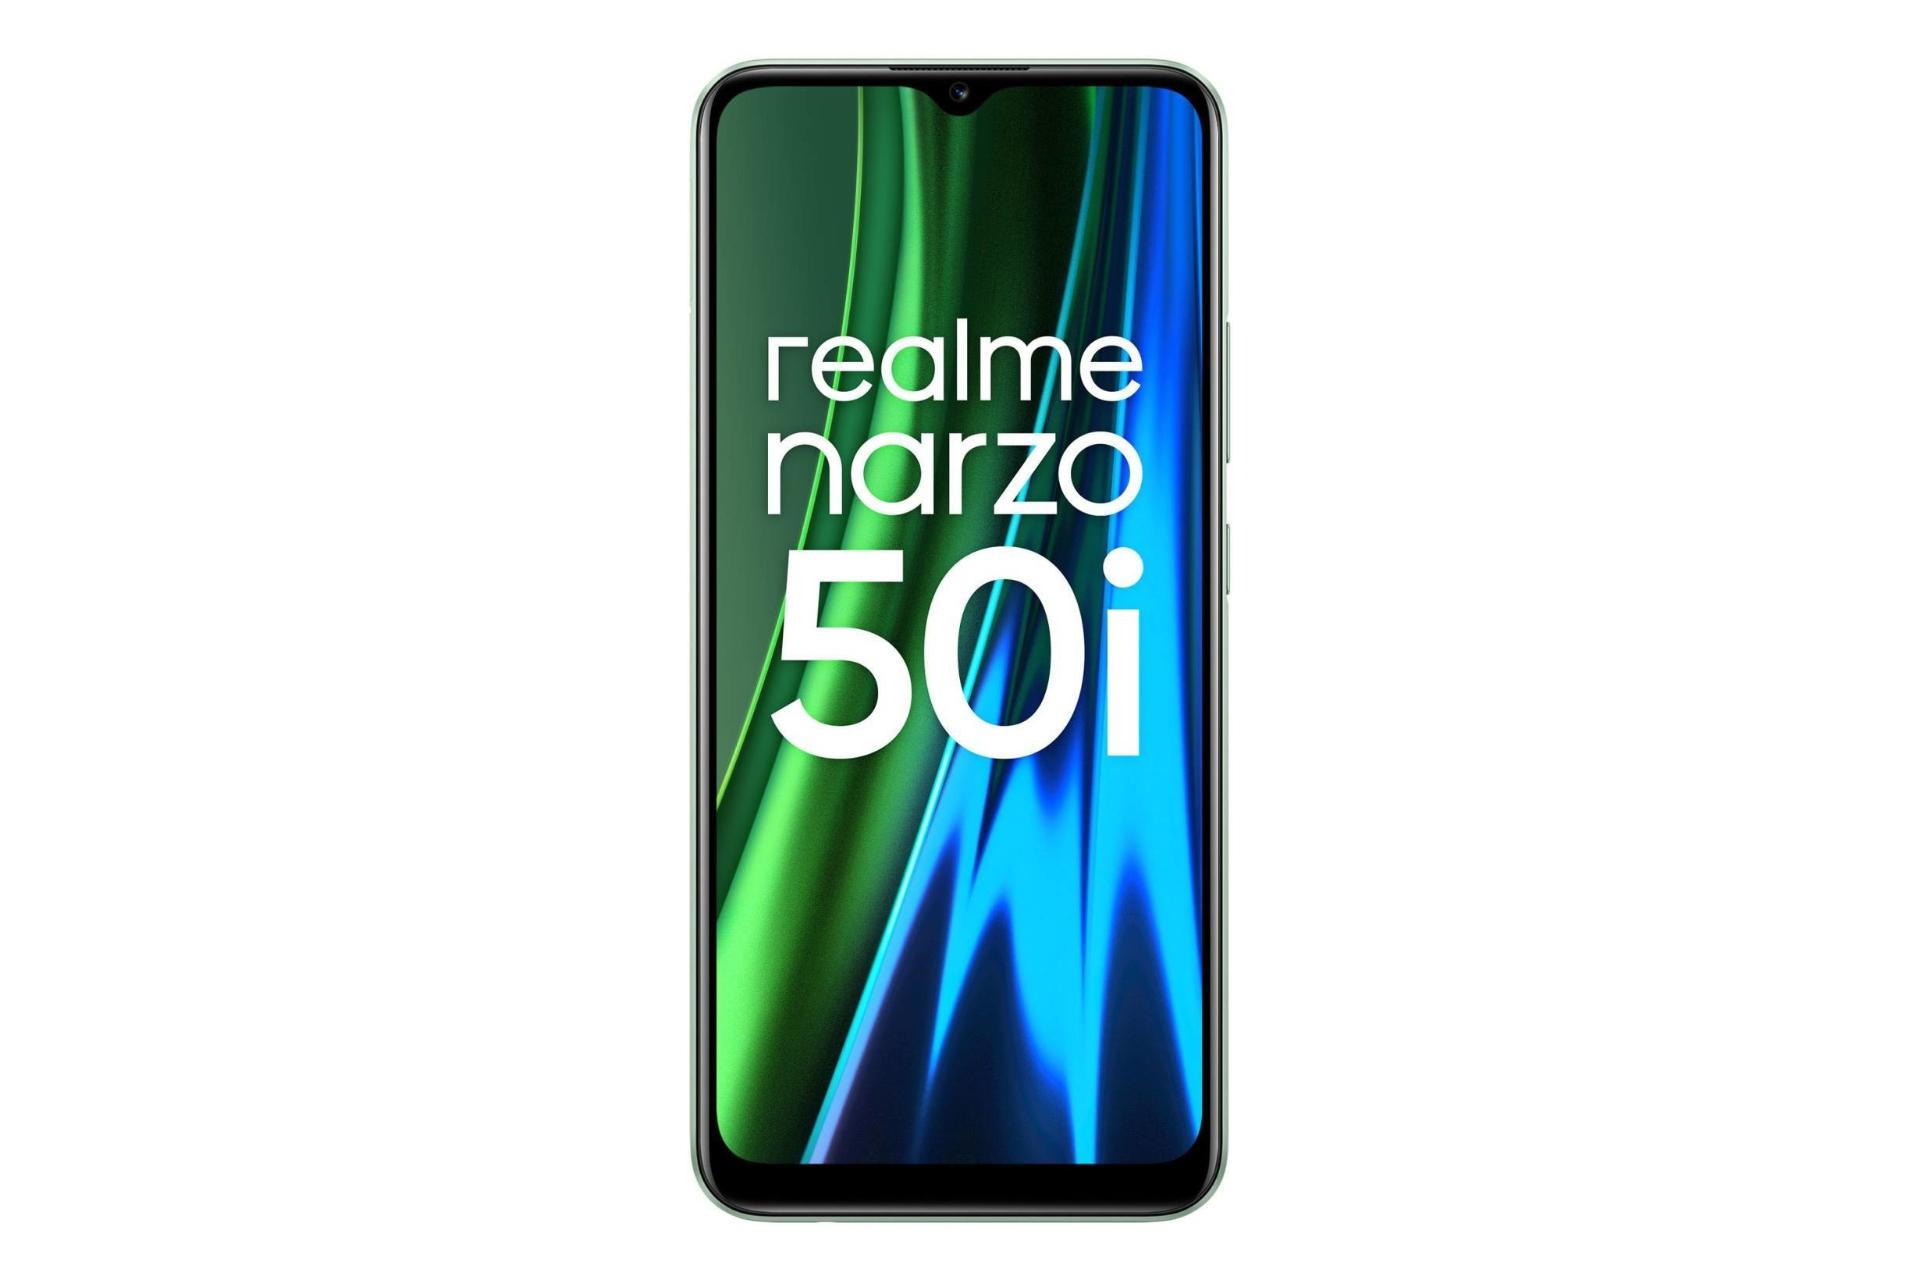 پنل جلو گوشی موبایل ریلمی نارزو 50 آی / Realme Narzo 50i سبز روشن